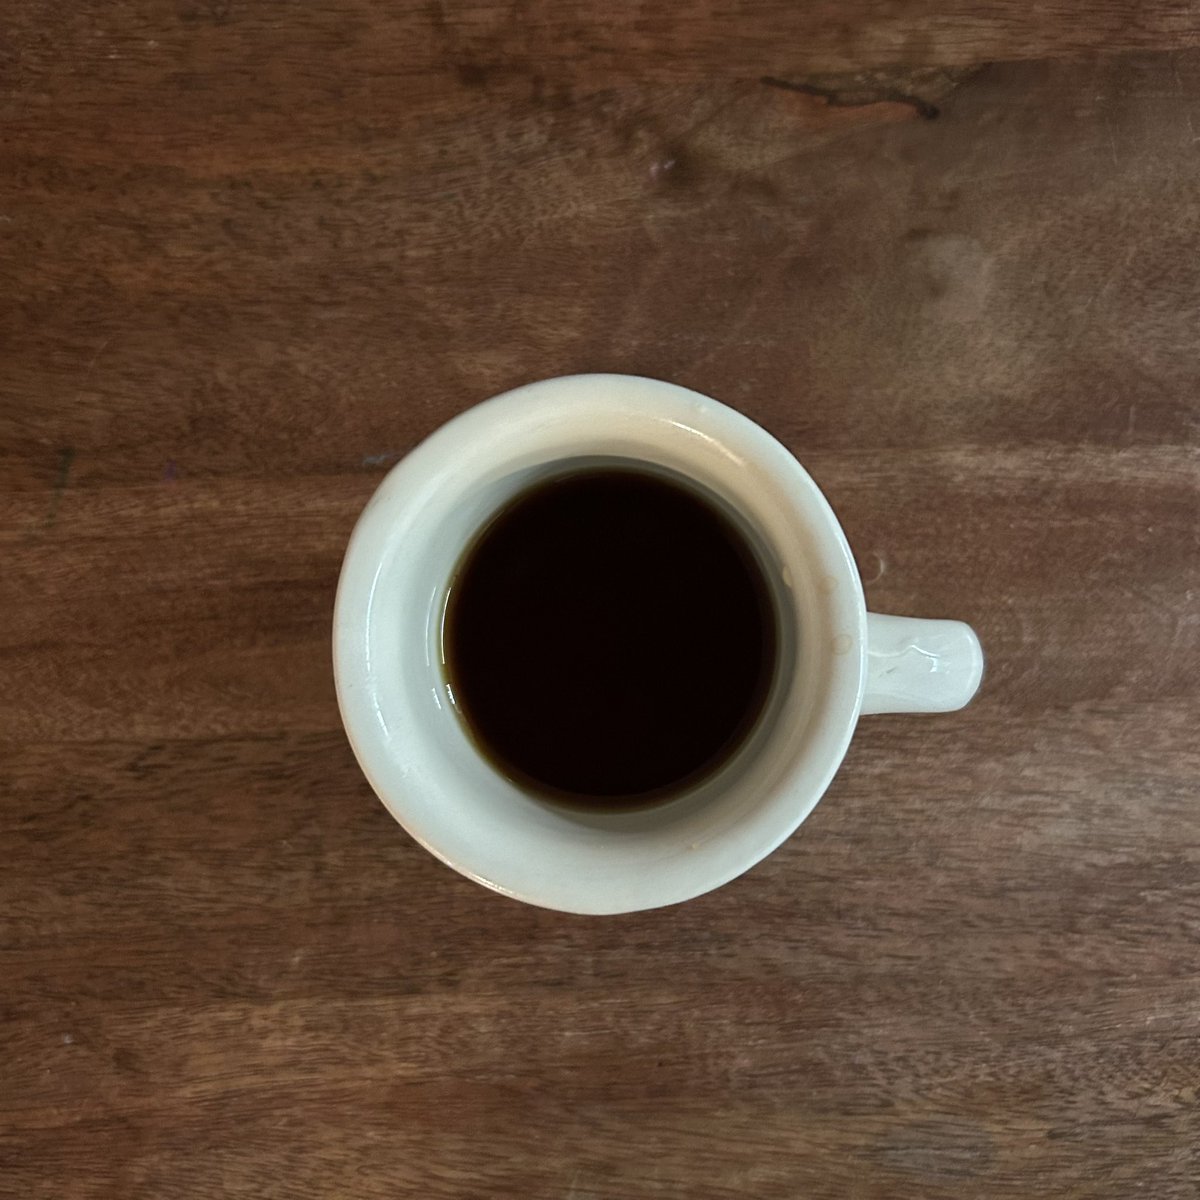 〈コーヒー〉
一番美味しいコーヒーを淹れる休日。
#coffeecounty